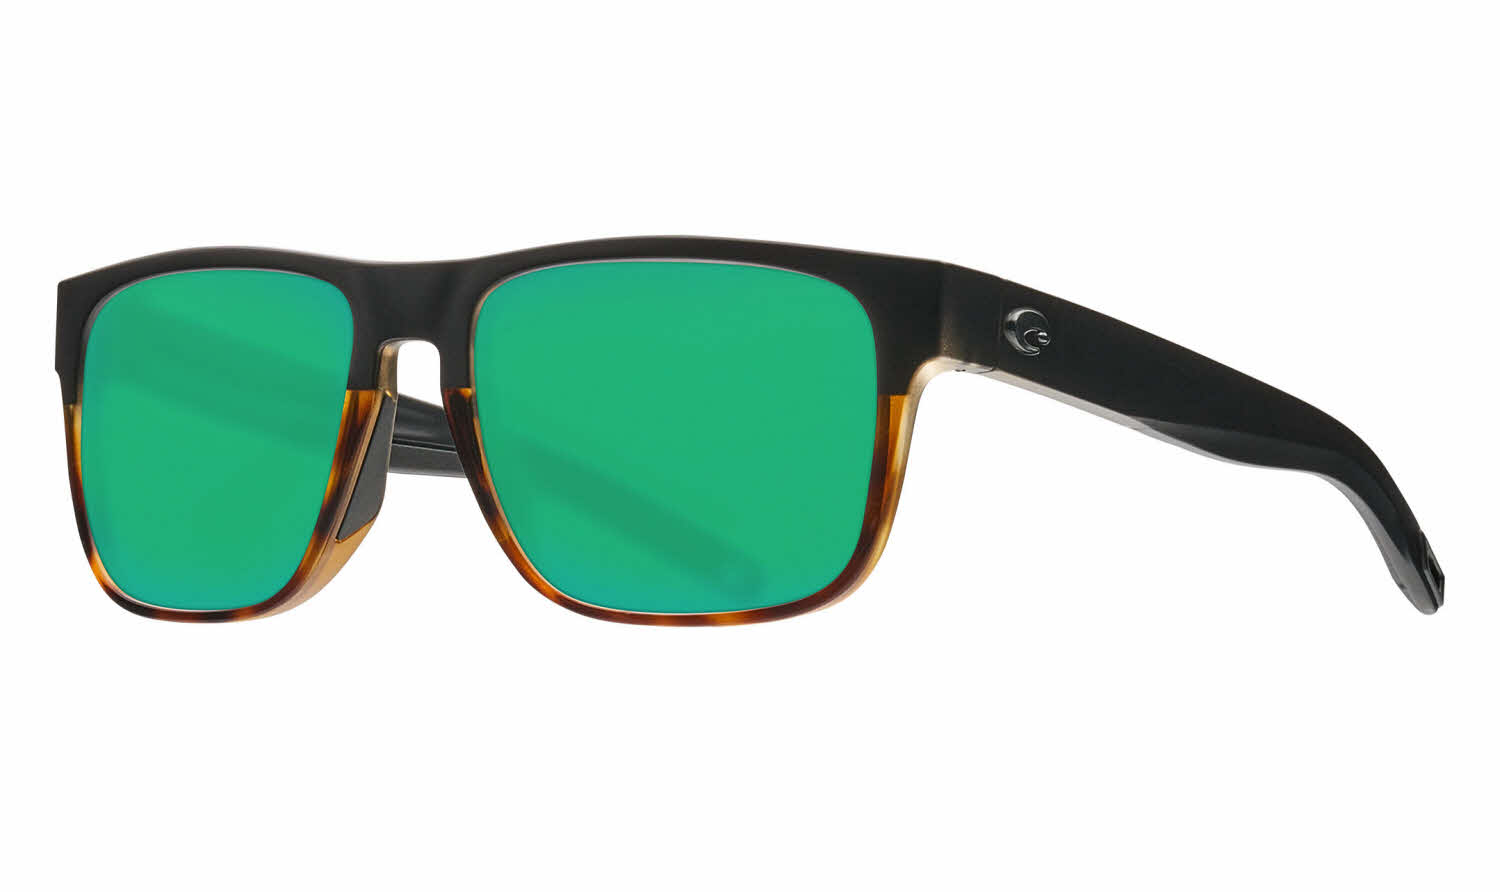 Costa Spearo Sunglasses: Tortoise Green Color